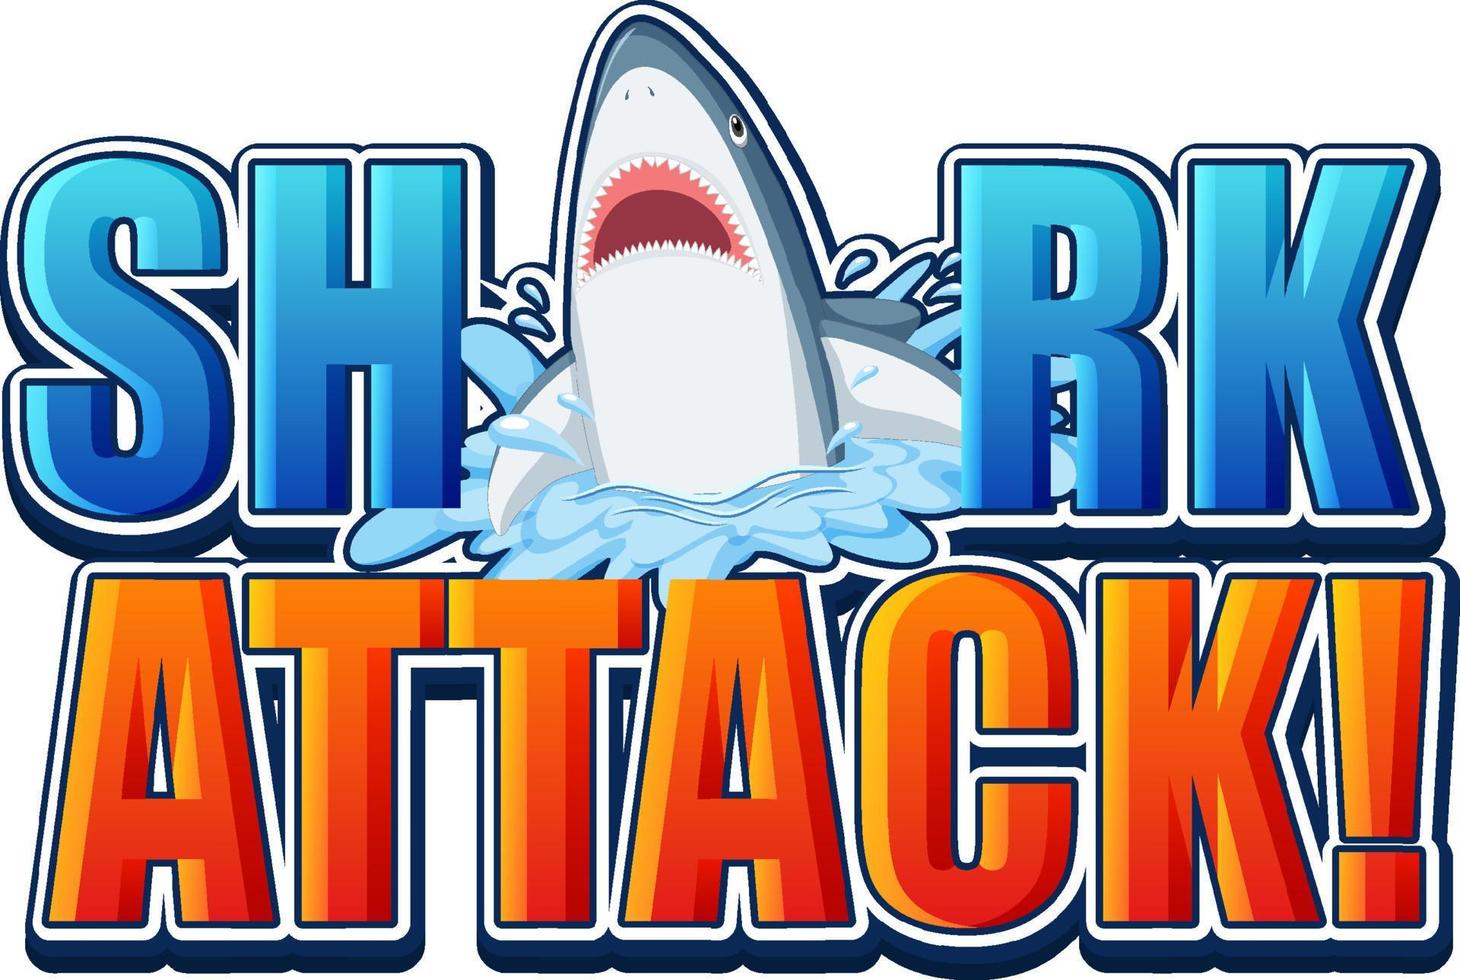 Shark attack teckensnittslogotyp med tecknad aggressiv haj vektor